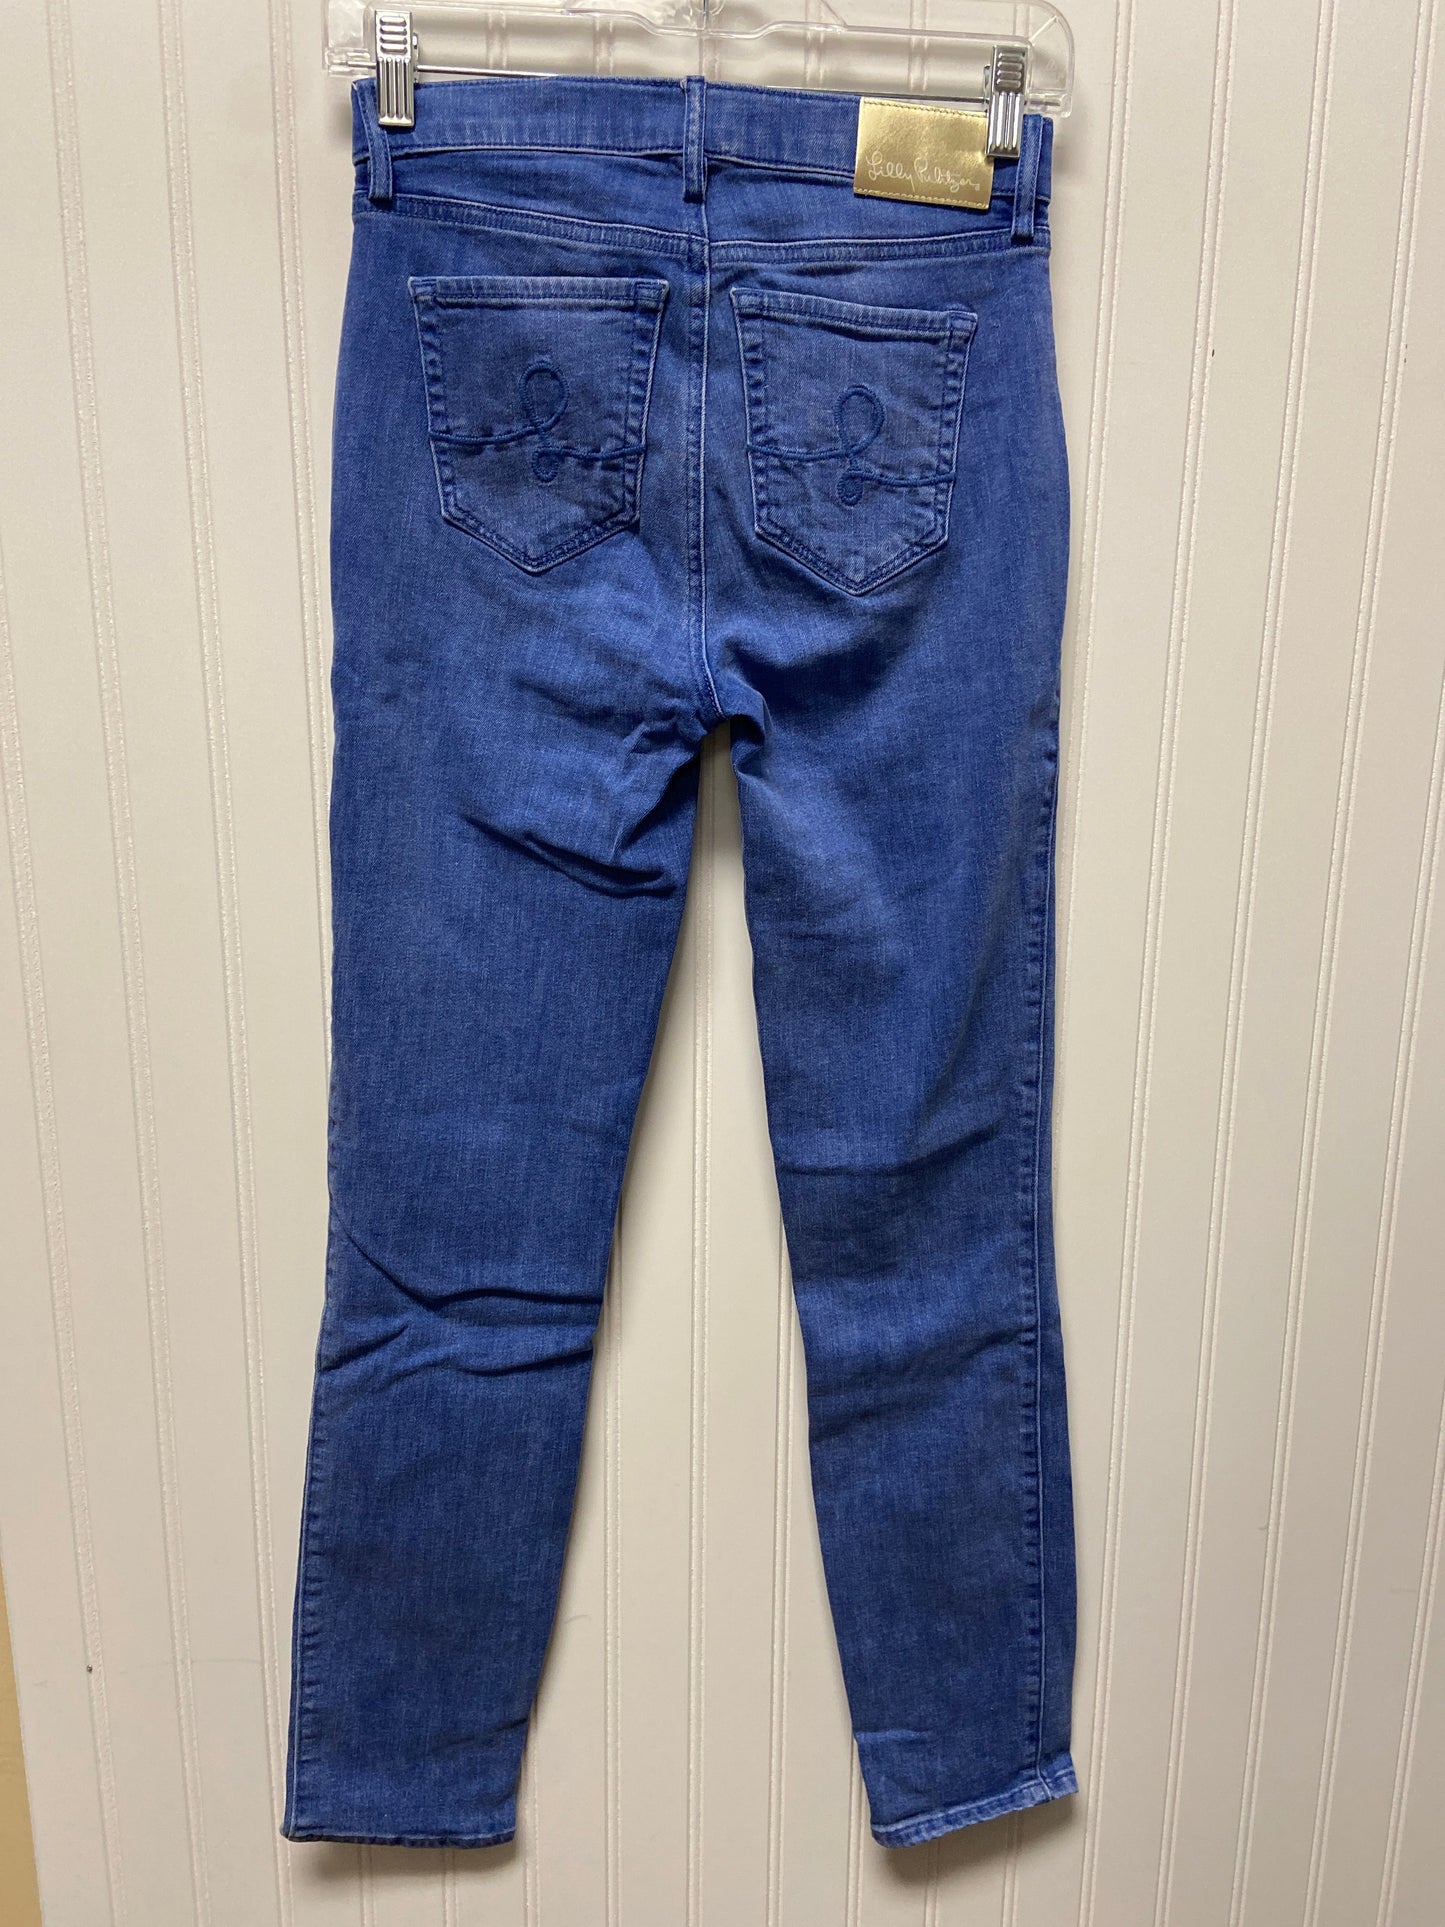 Blue Denim Jeans Designer Lilly Pulitzer, Size 0